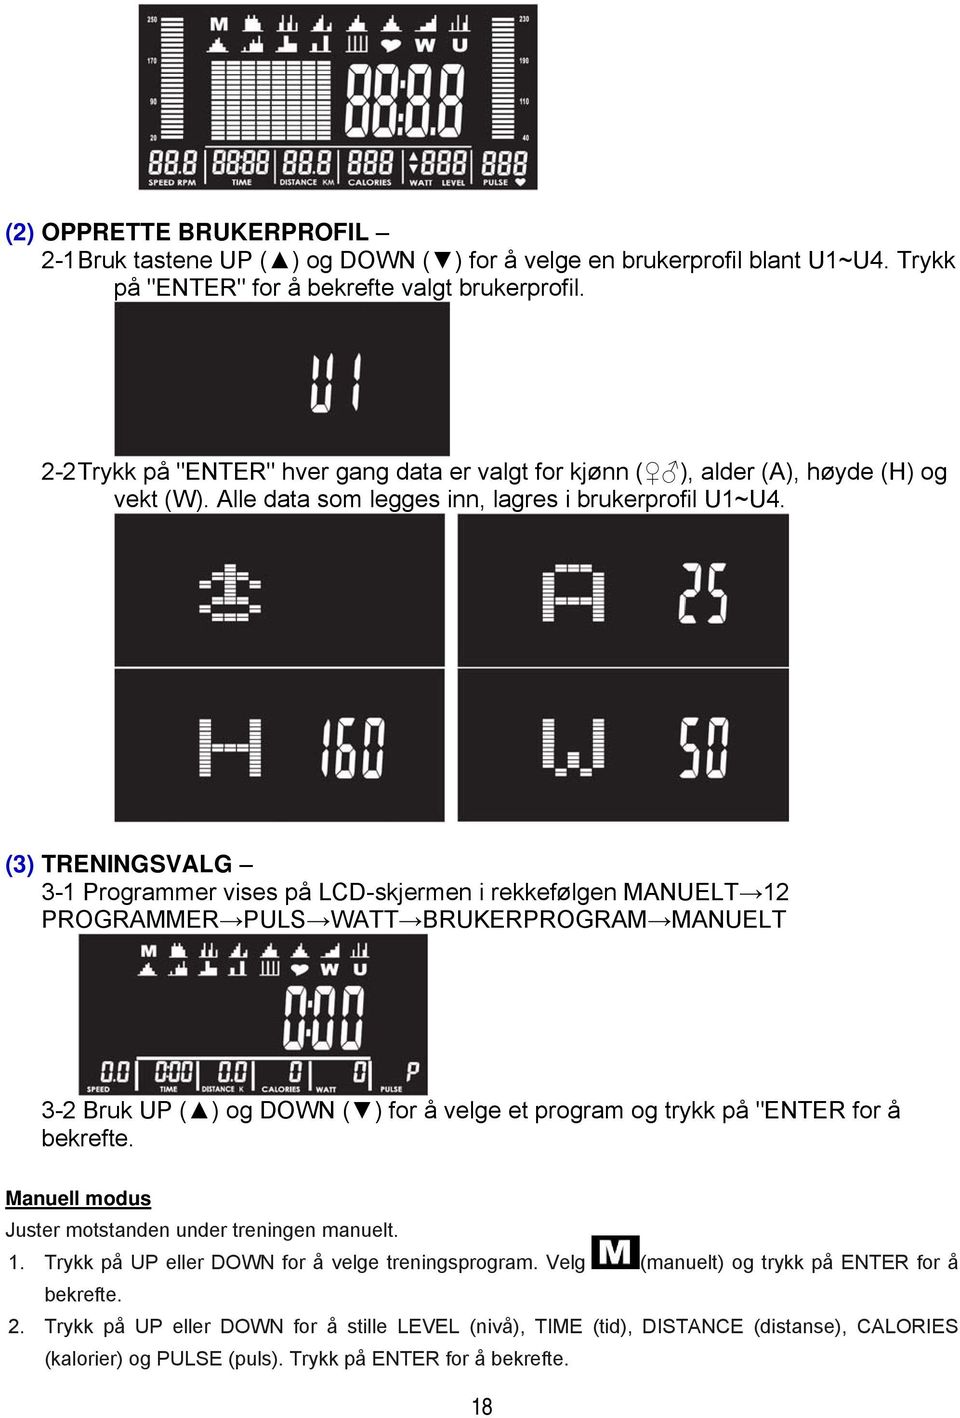 (3) TRENINGSVALG 3-1 Programmer vises på LCD-skjermen i rekkefølgen MANUELT 12 PROGRAMMER PULS WATT BRUKERPROGRAM MANUELT 3-2 Bruk UP ( ) og DOWN ( ) for å velge et program og trykk på "ENTER for å